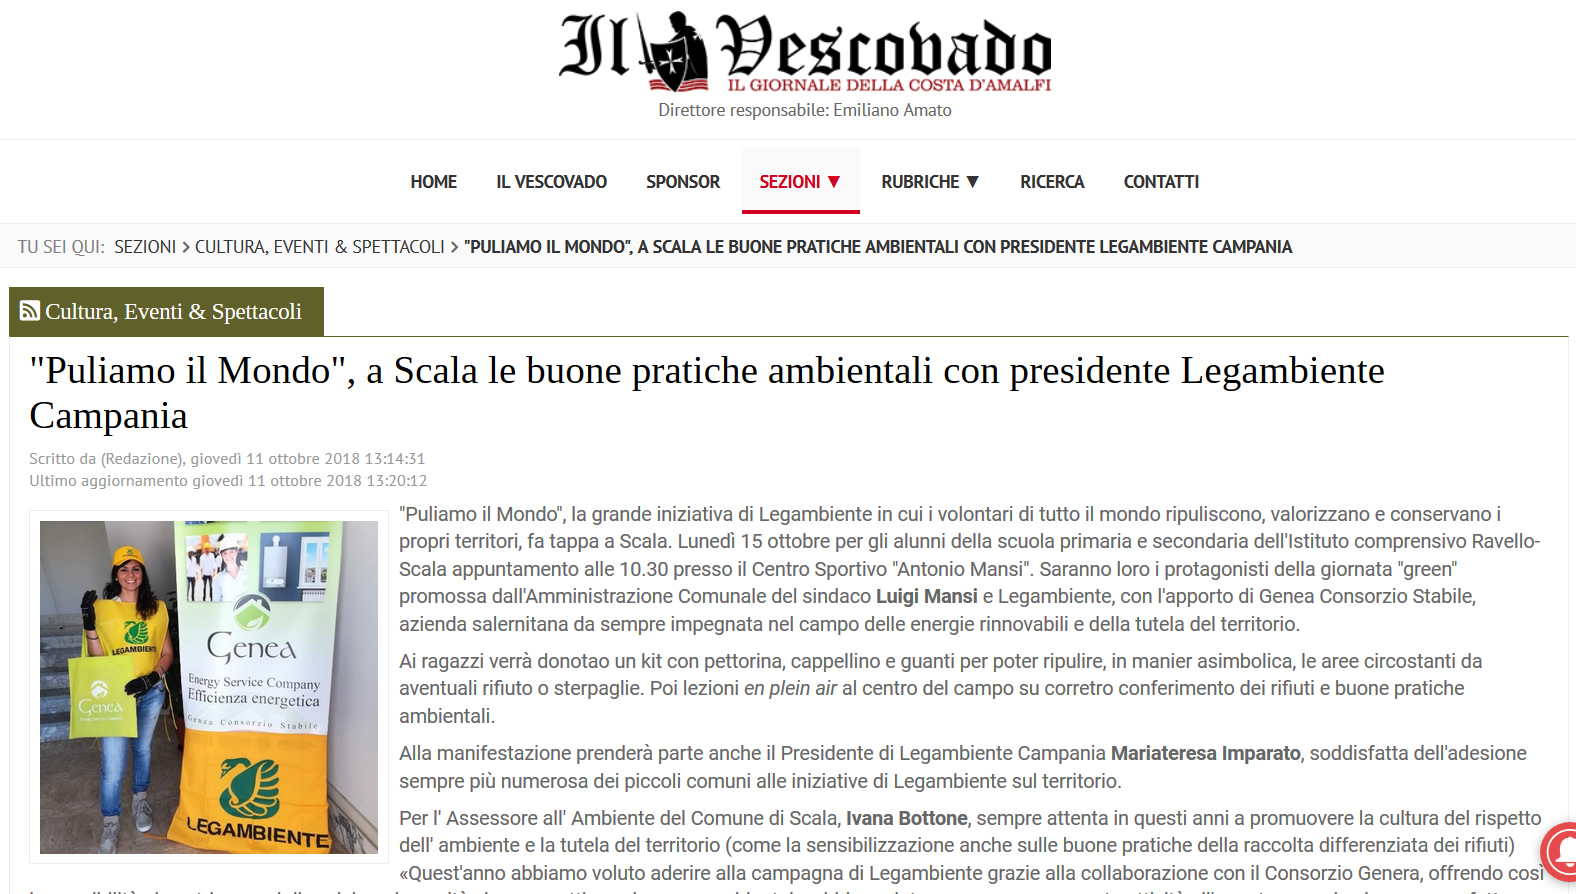 Il Vescovado – “Puliamo il Mondo”, a Scala le buone pratiche ambientali con presidente Legambiente Campania